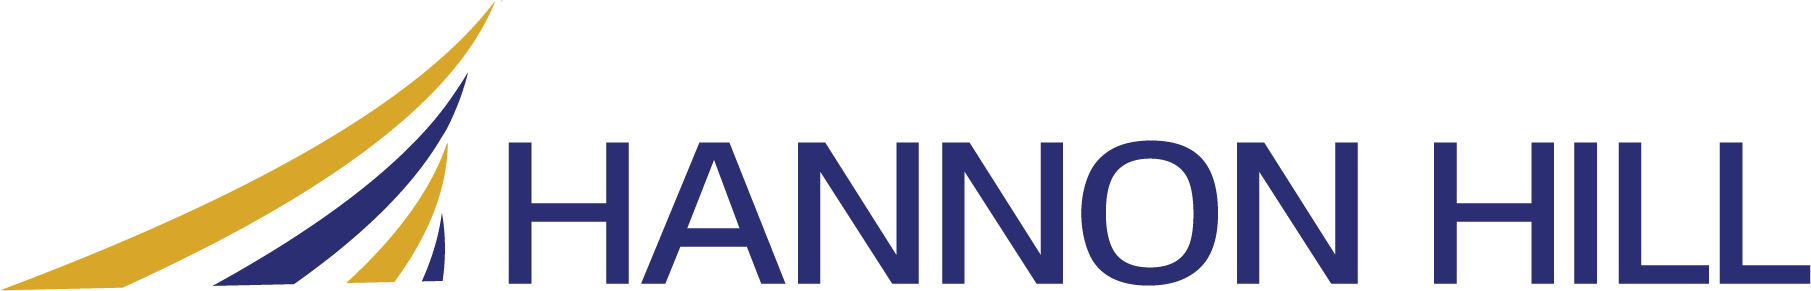 Hannon Hill color logo